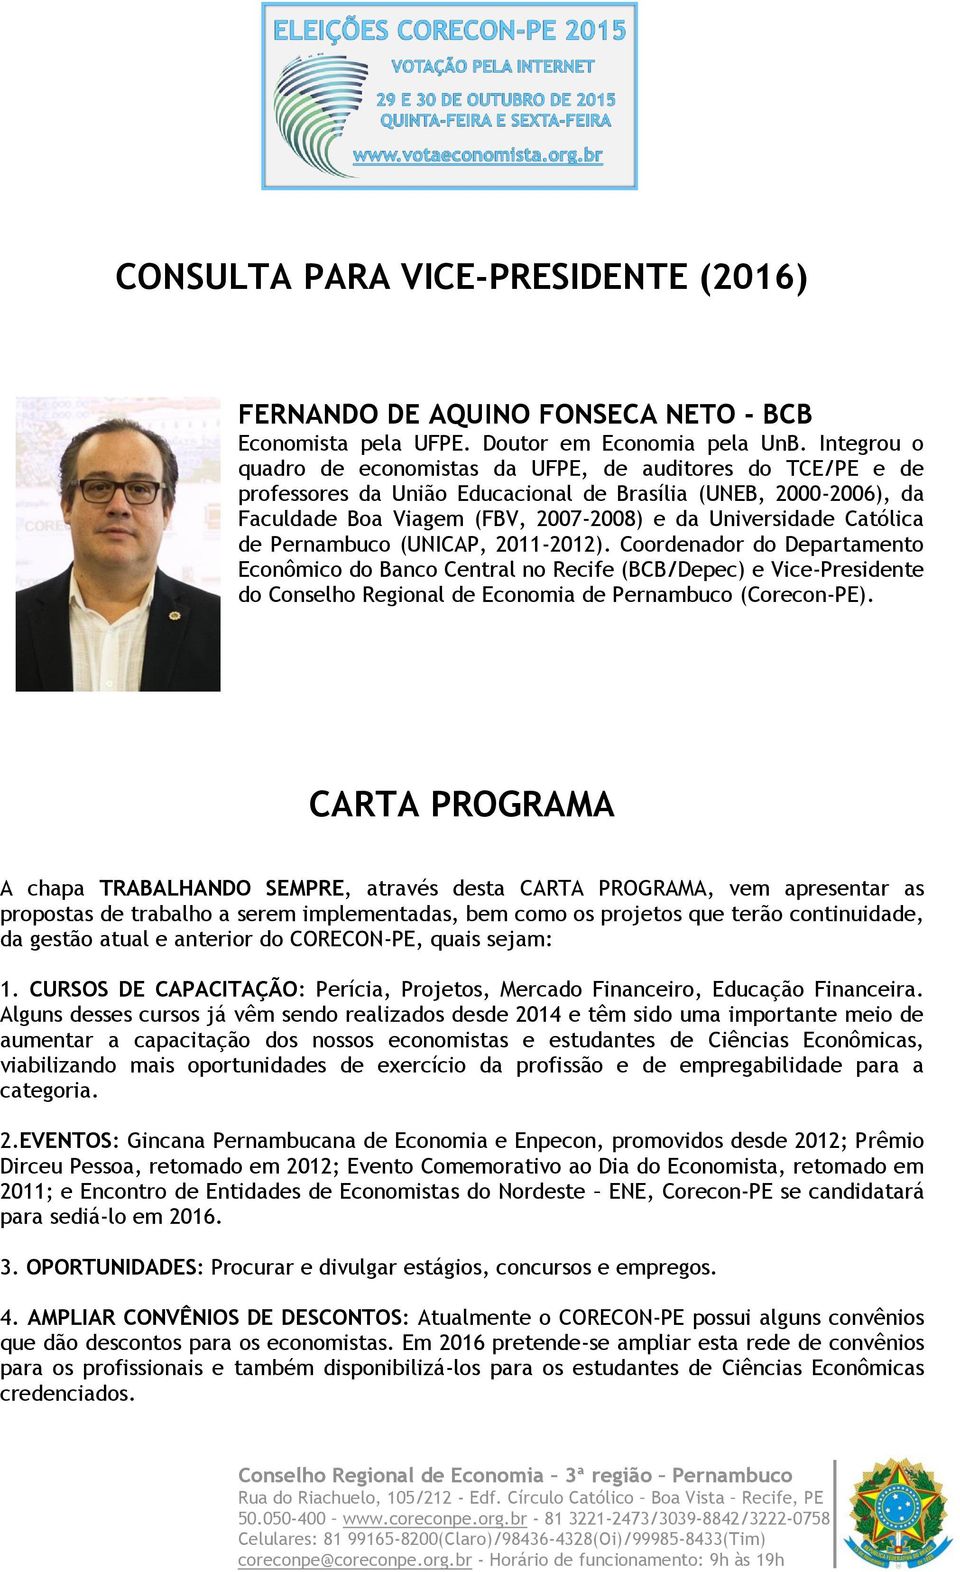 Católica de Pernambuco (UNICAP, 2011-2012). Coordenador do Departamento Econômico do Banco Central no Recife (BCB/Depec) e Vice-Presidente do Conselho Regional de Economia de Pernambuco (Corecon-PE).